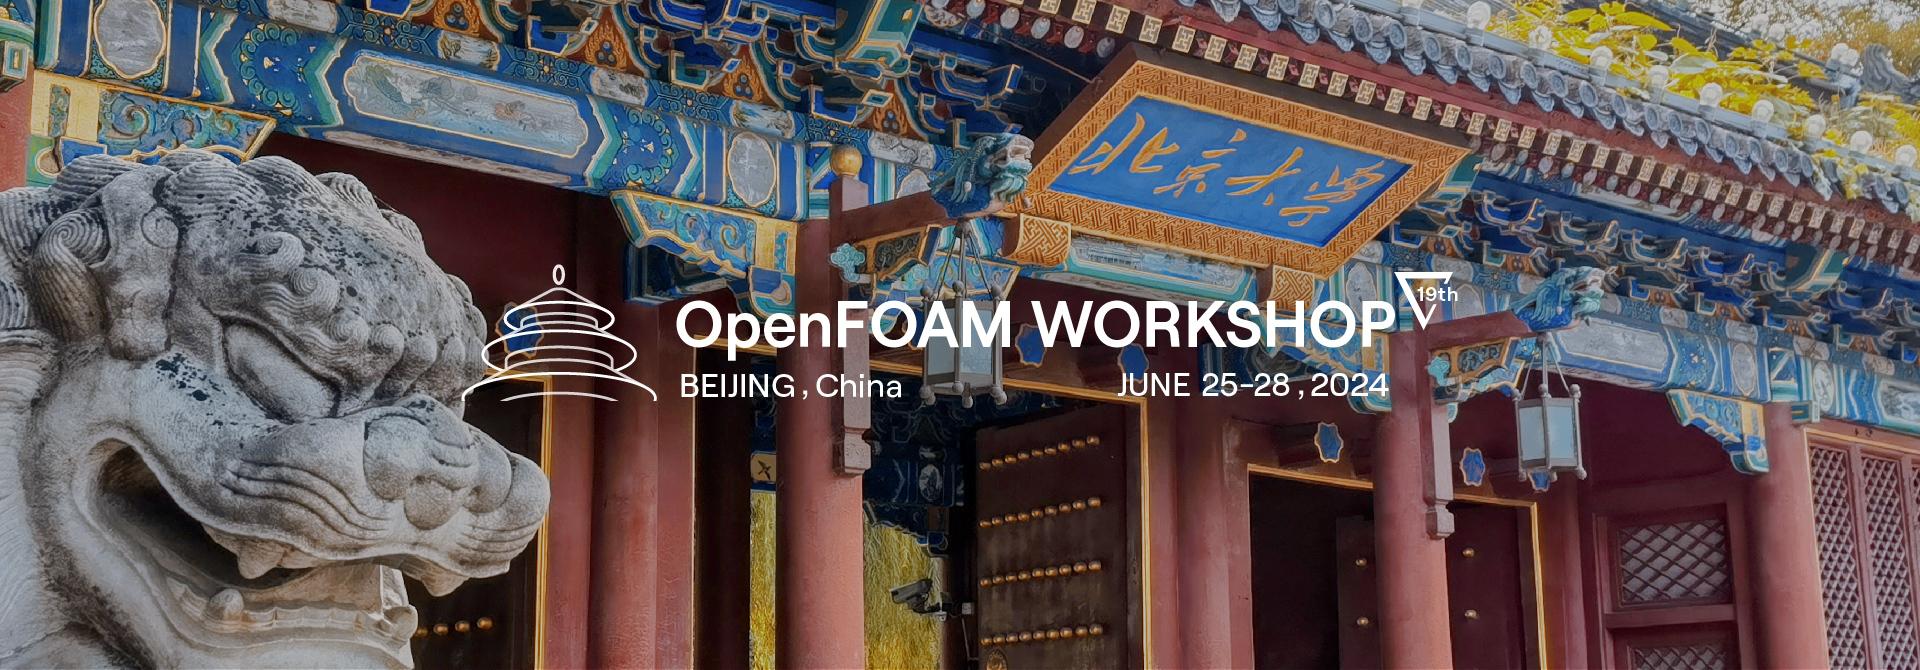 19th OpenFOAM Workshop